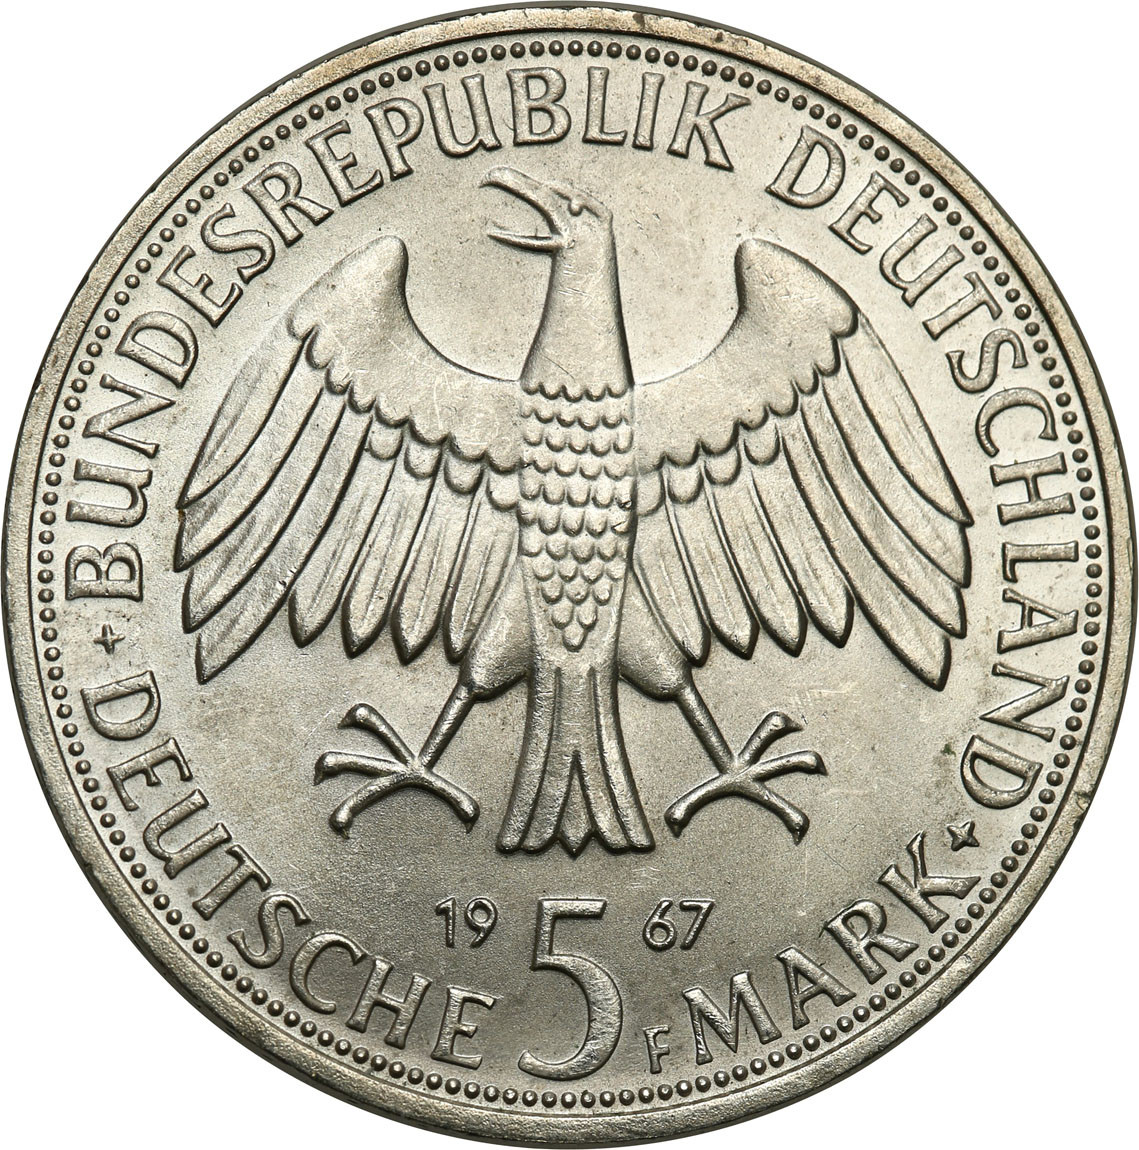 Niemcy, RFN. 5 marek 1967 F, Stuttgart, Wilhelm i Alexander von Humboldt